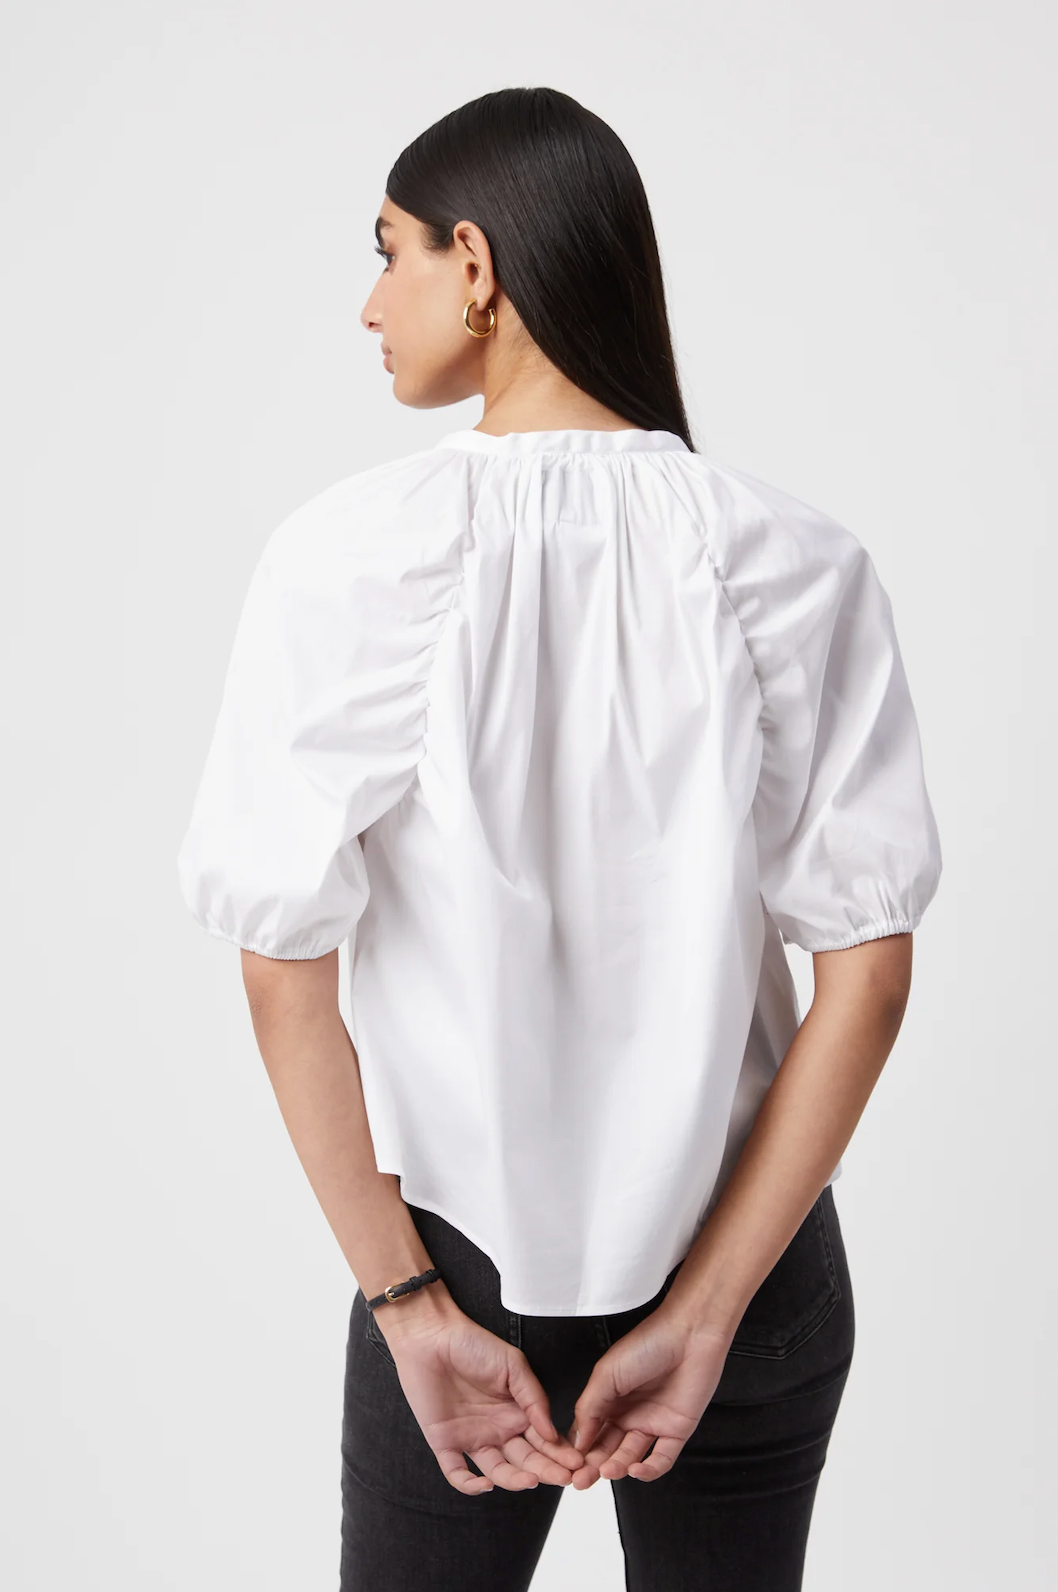 The Shirt: Antoinette Shirt White